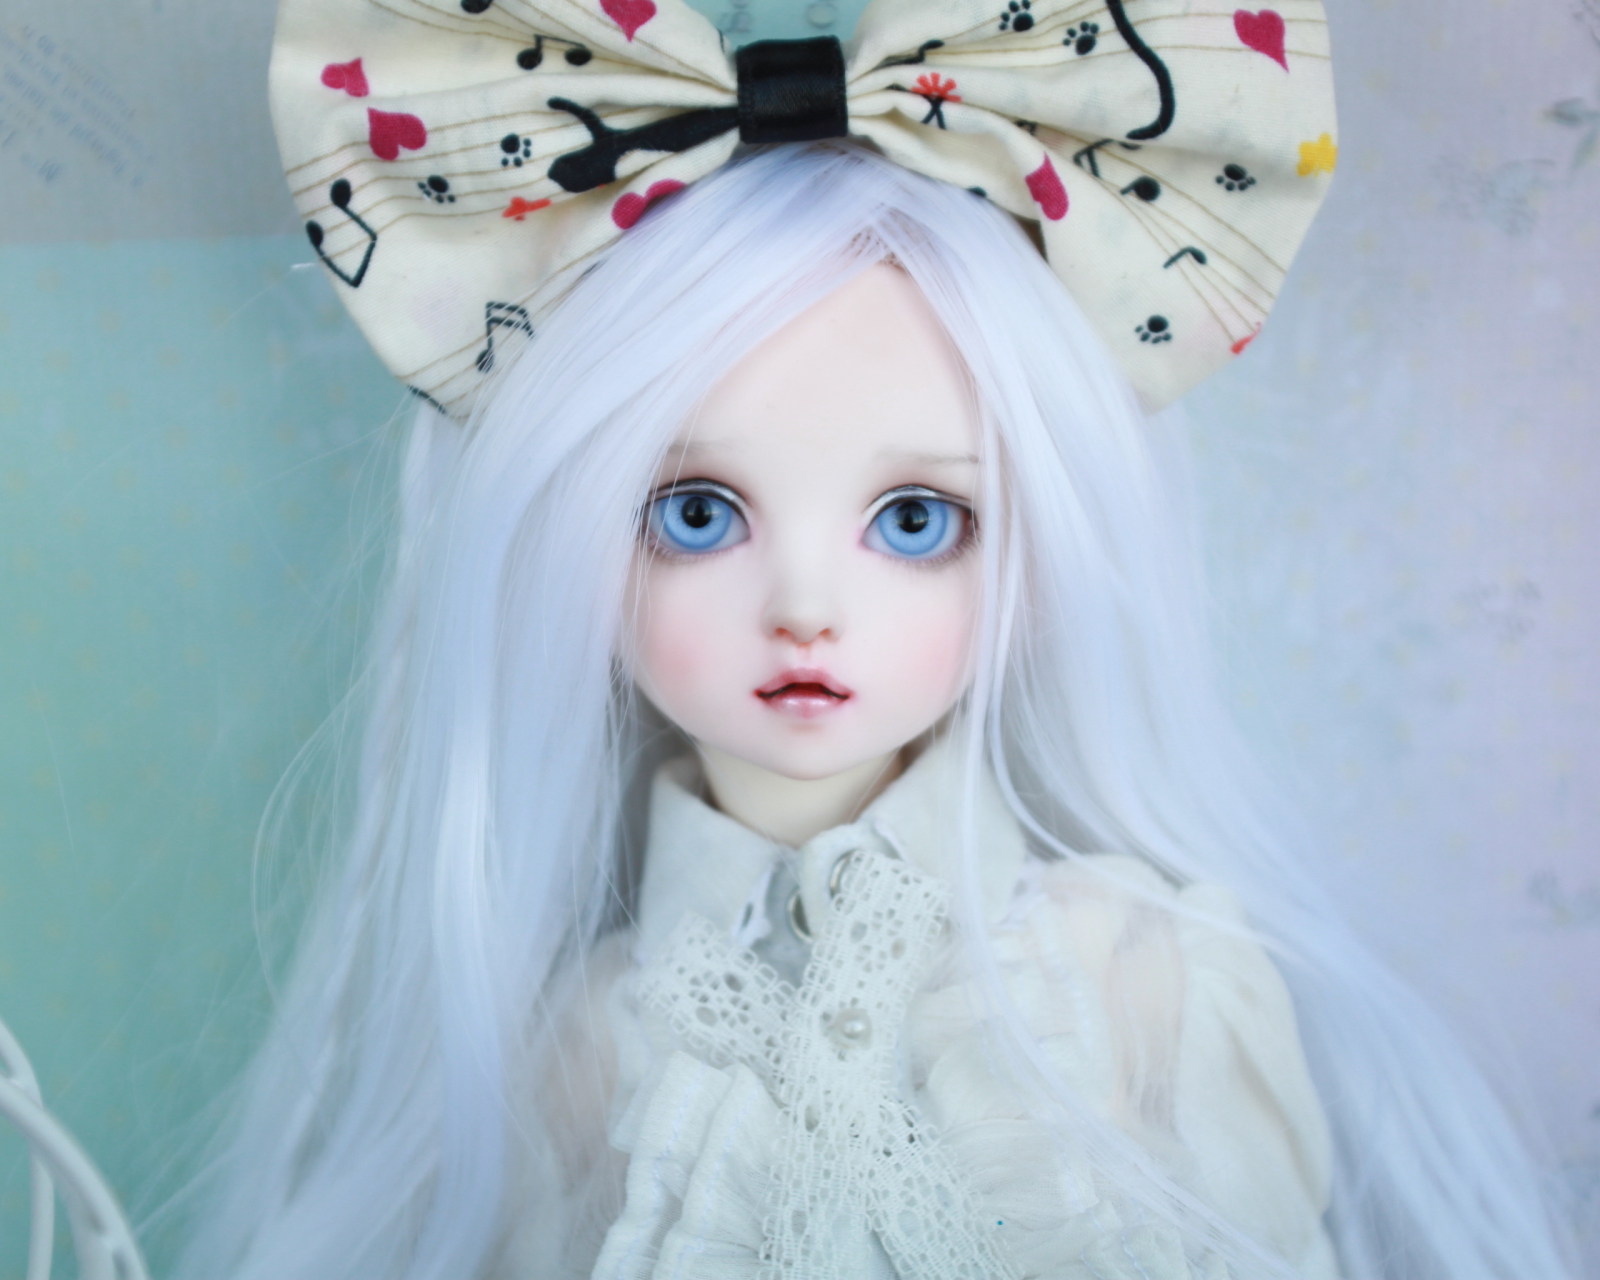 Обои Blonde Doll With Big Bow 1600x1280